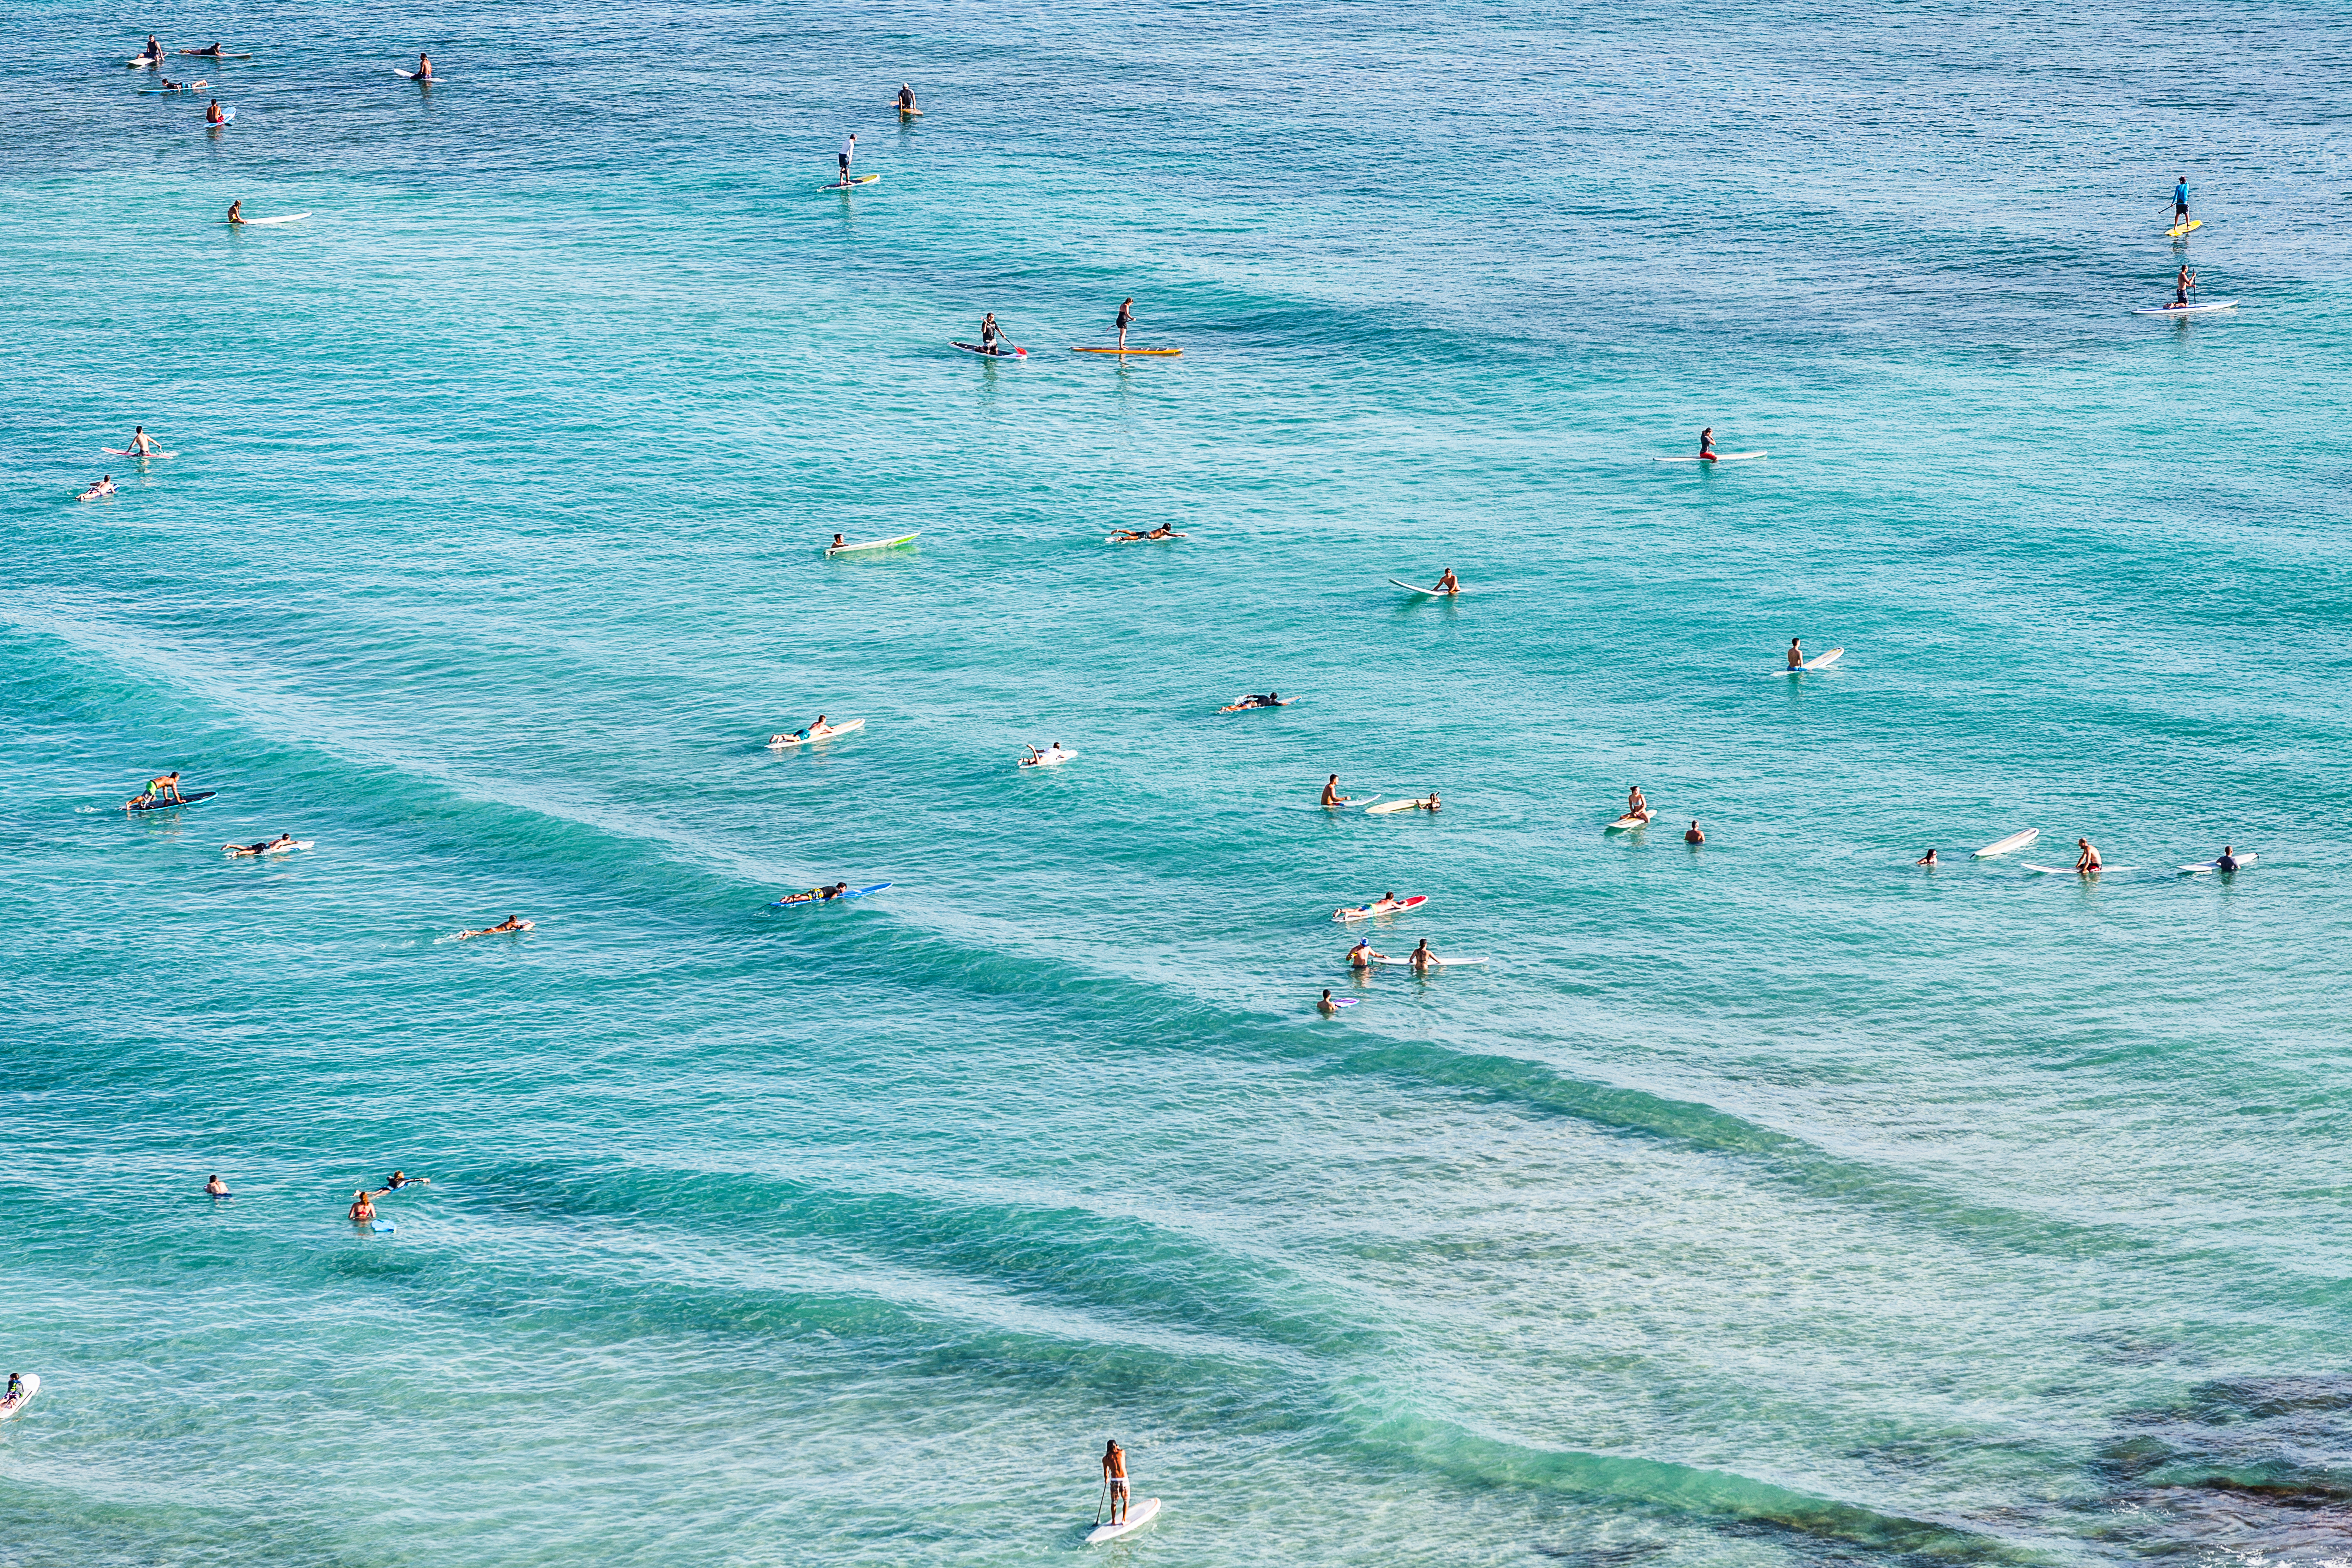 Surfing in Waikiki 